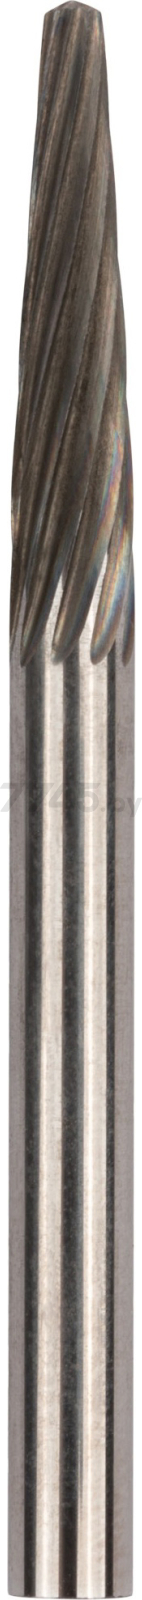 Шарошка коническая с закруглением хвостовик 3 мм FIT Профи (36585)